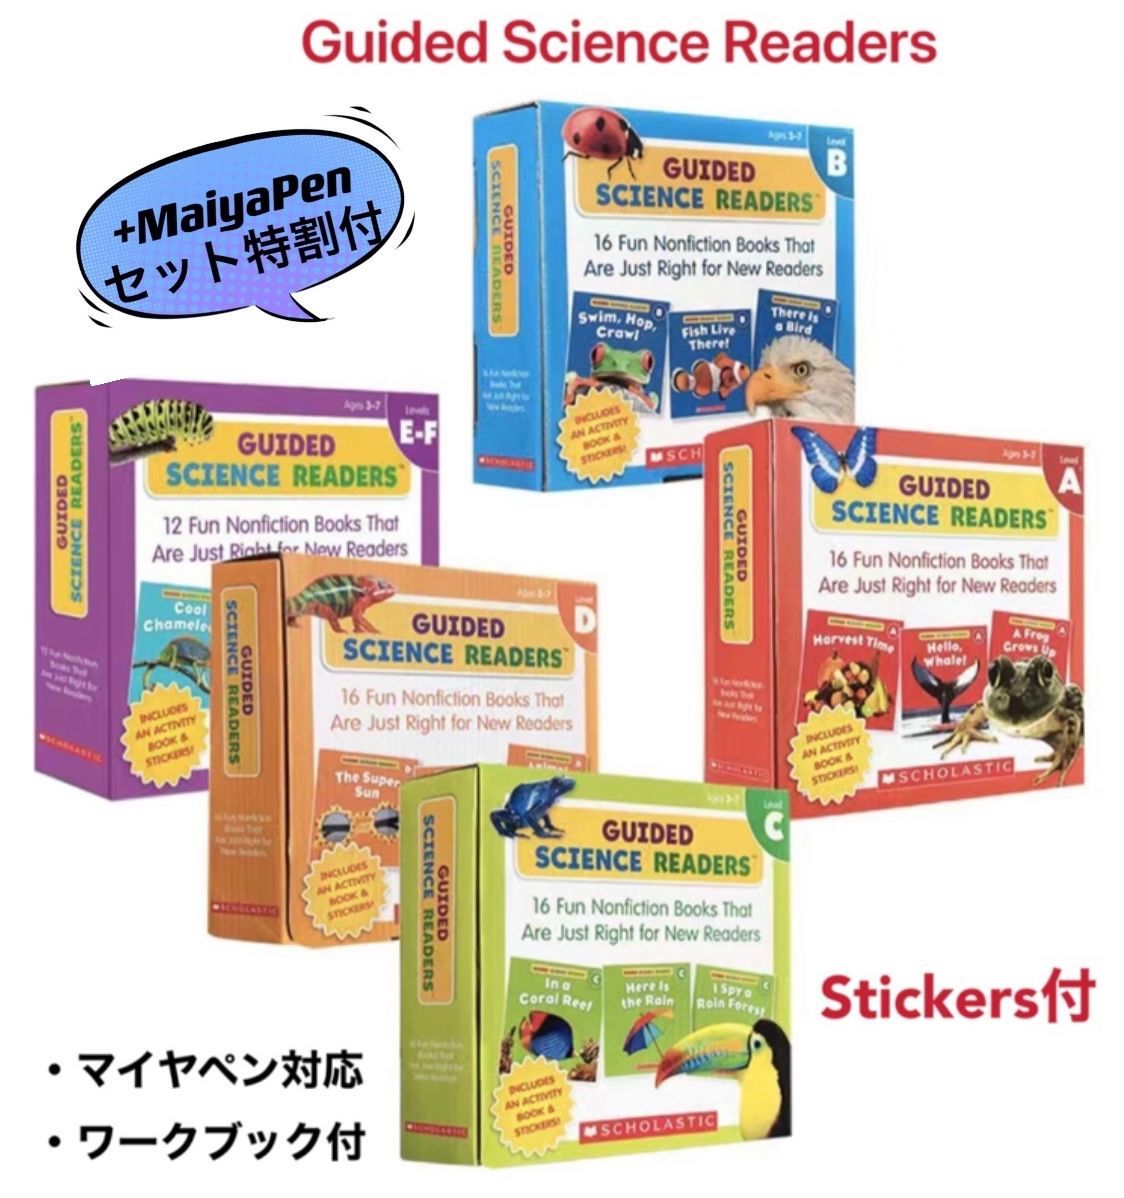 メイシーちゃん guided science readers マイヤペン対応-